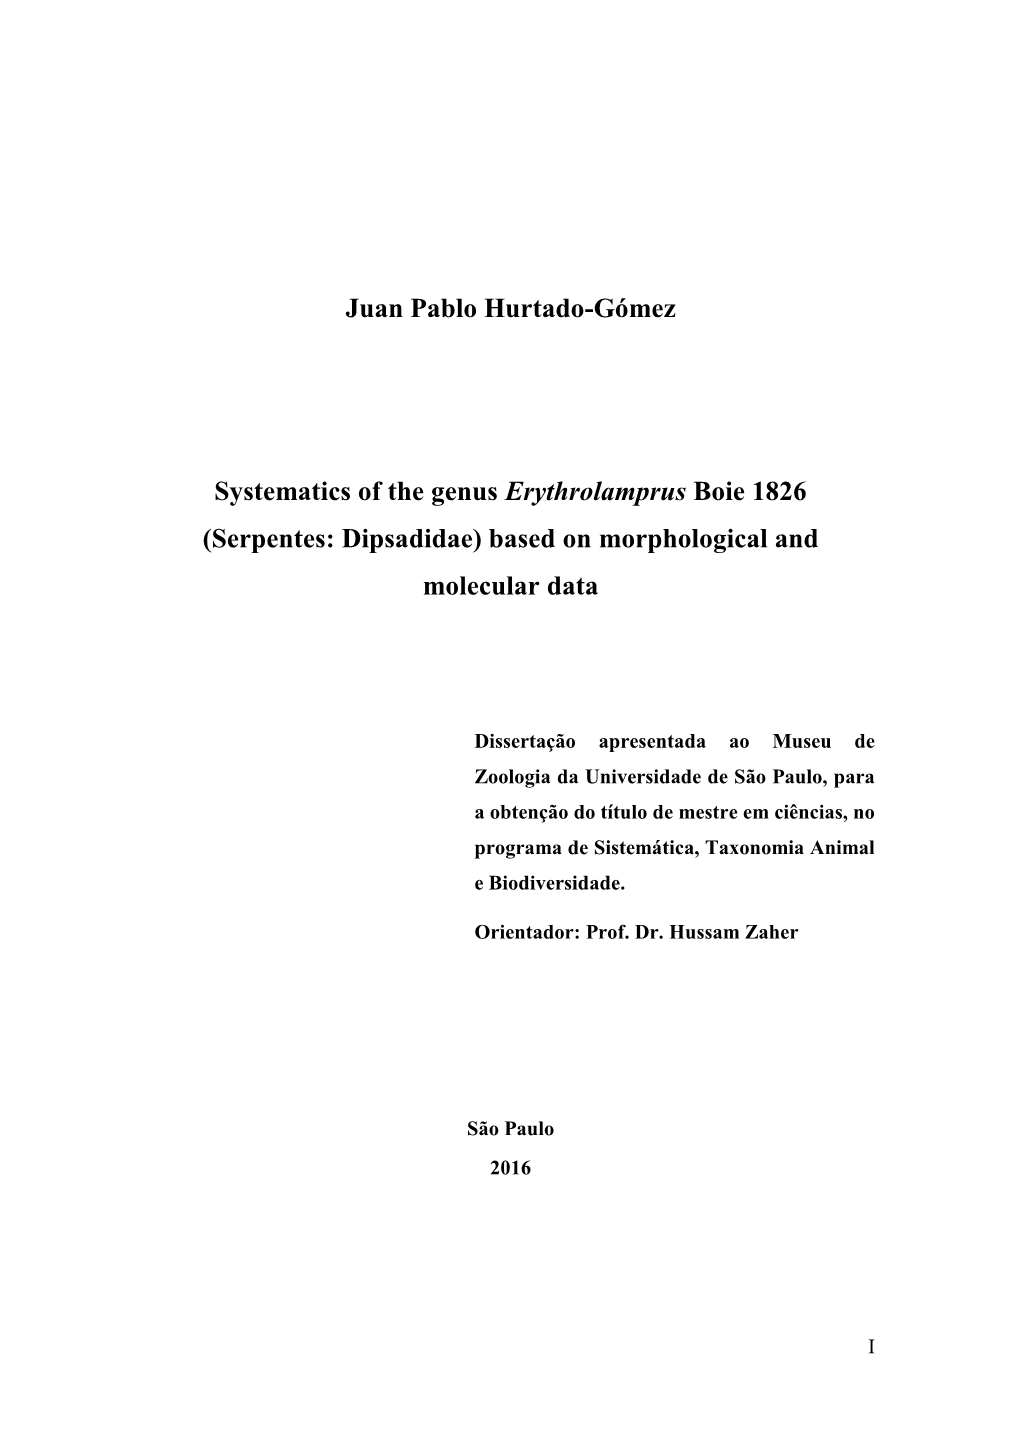 Juan Pablo Hurtado-Gómez Systematics of the Genus